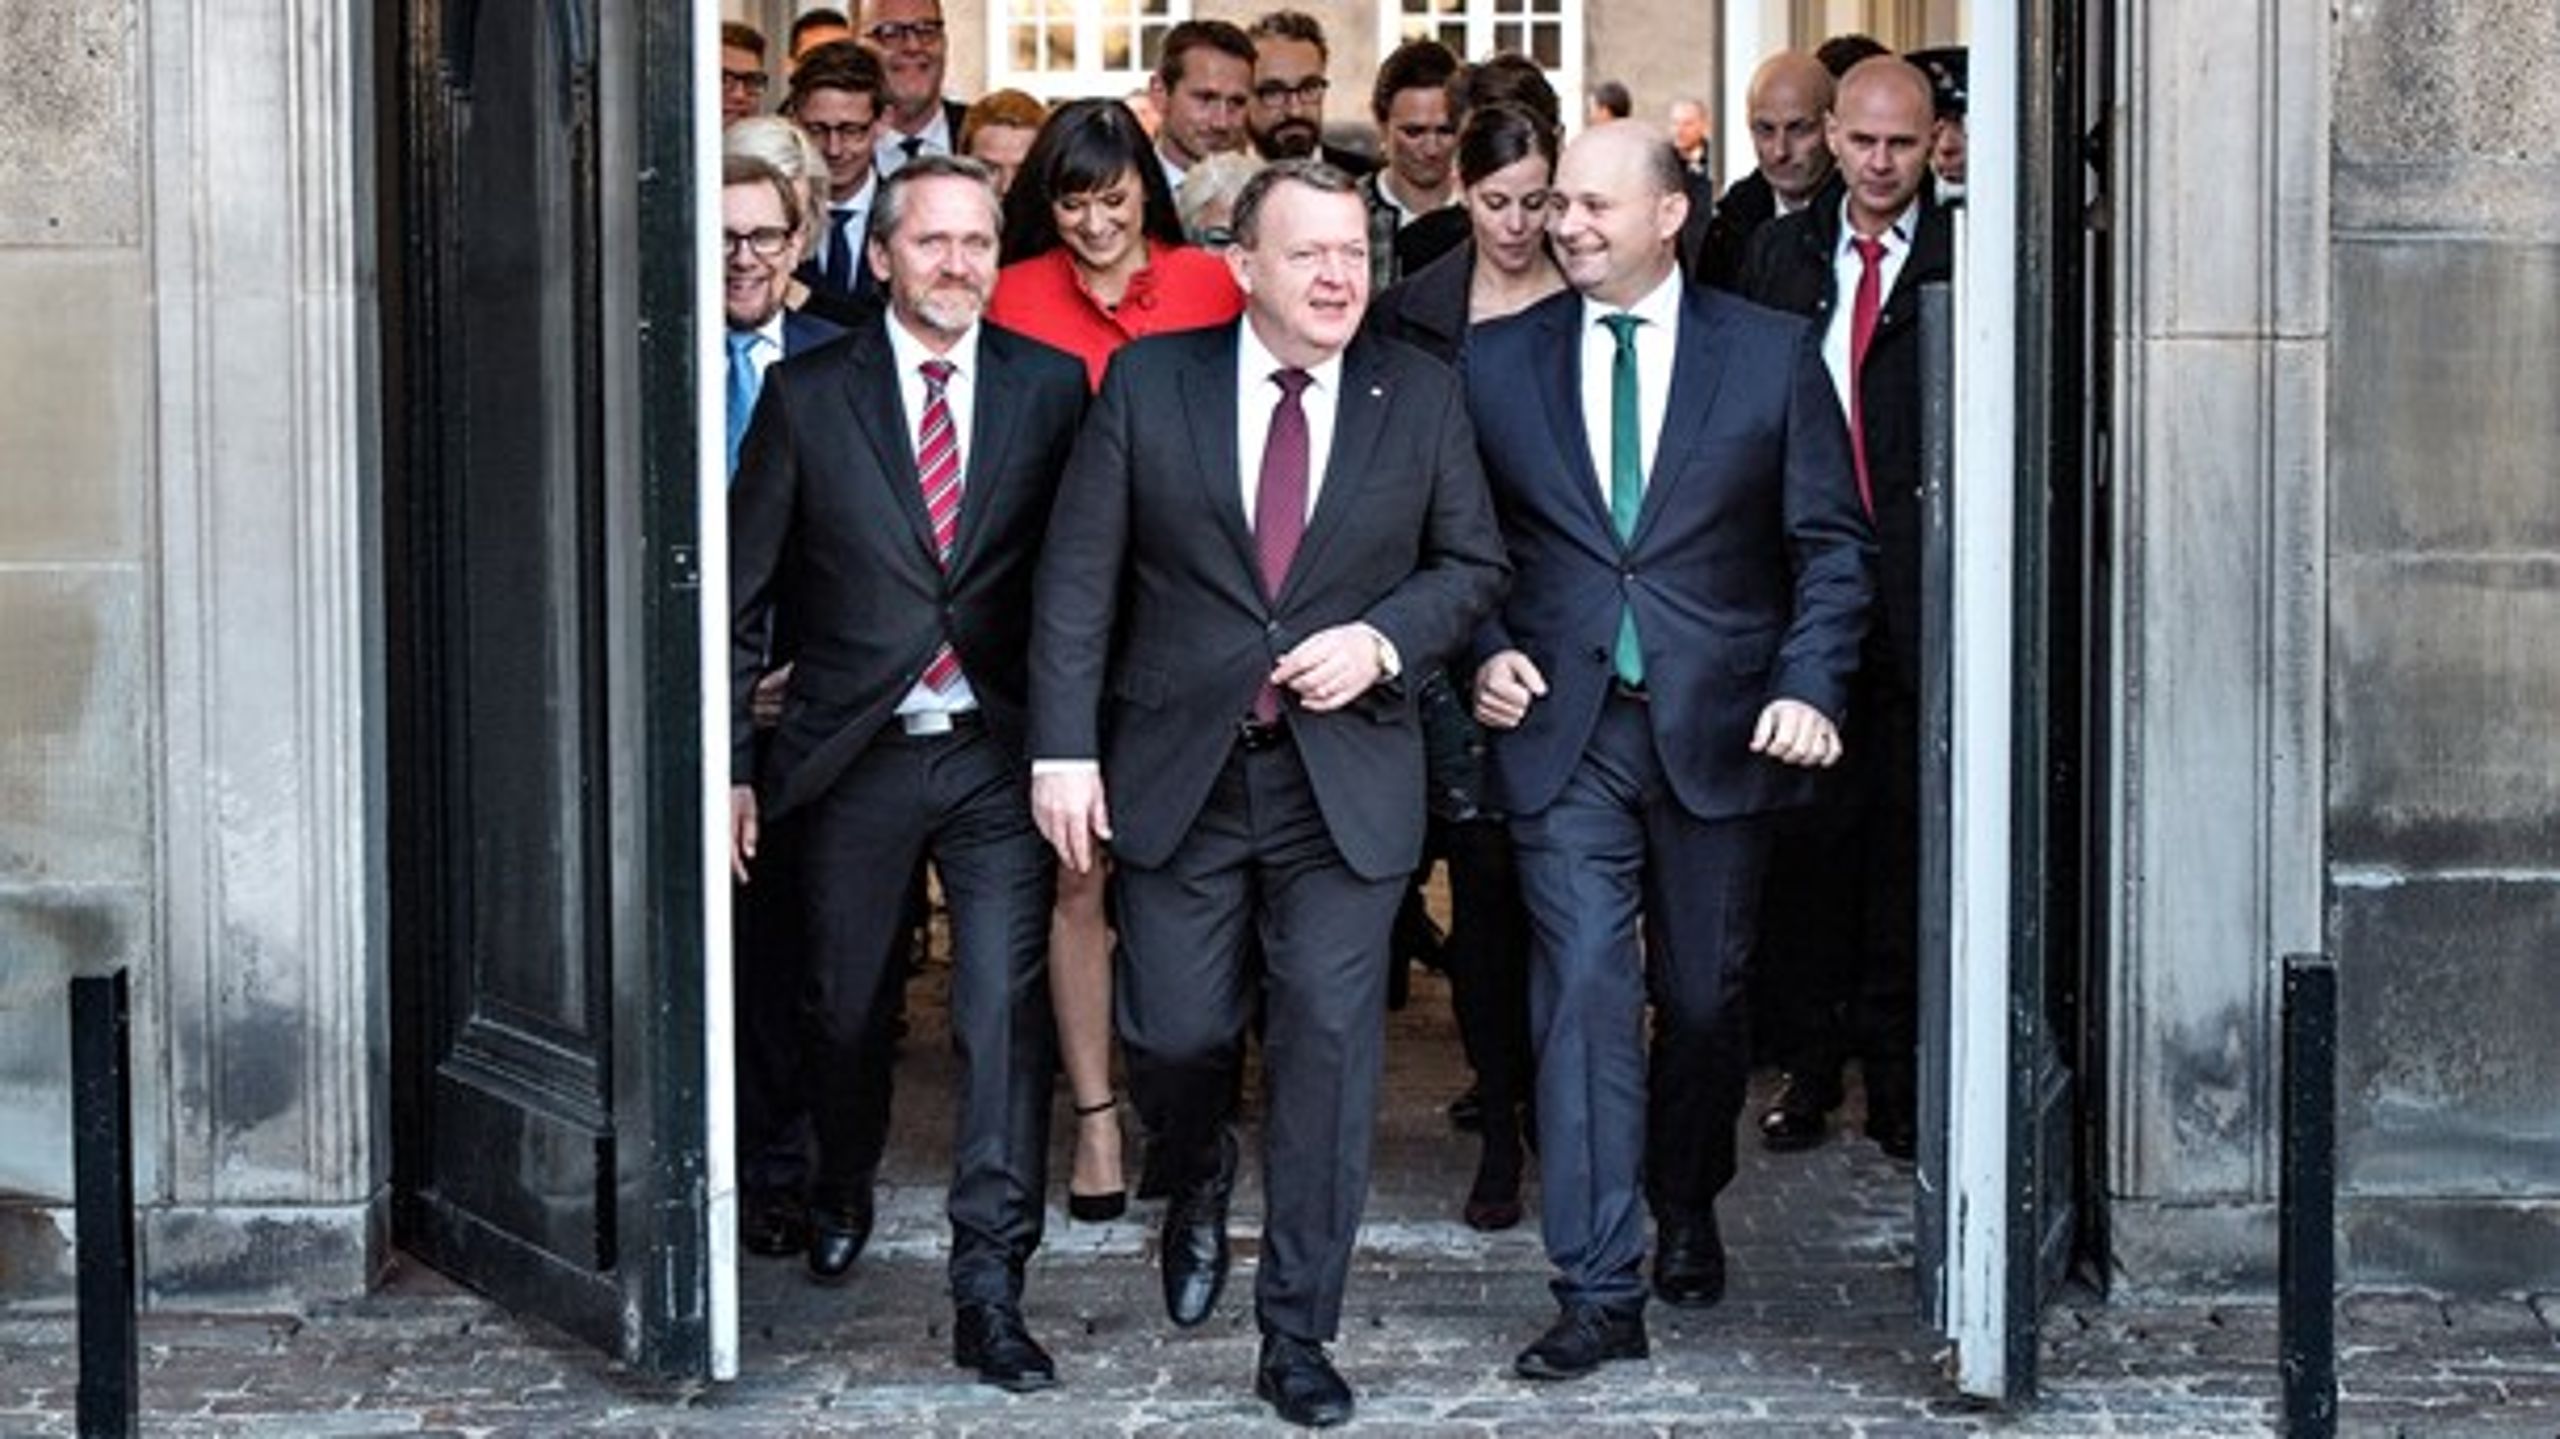 Statsminister Lars Løkke Rasmussen (V) præsenterede mandag 28. november 2016 sin nye regering bestående af Venstre, Liberal Alliance og Konservative.